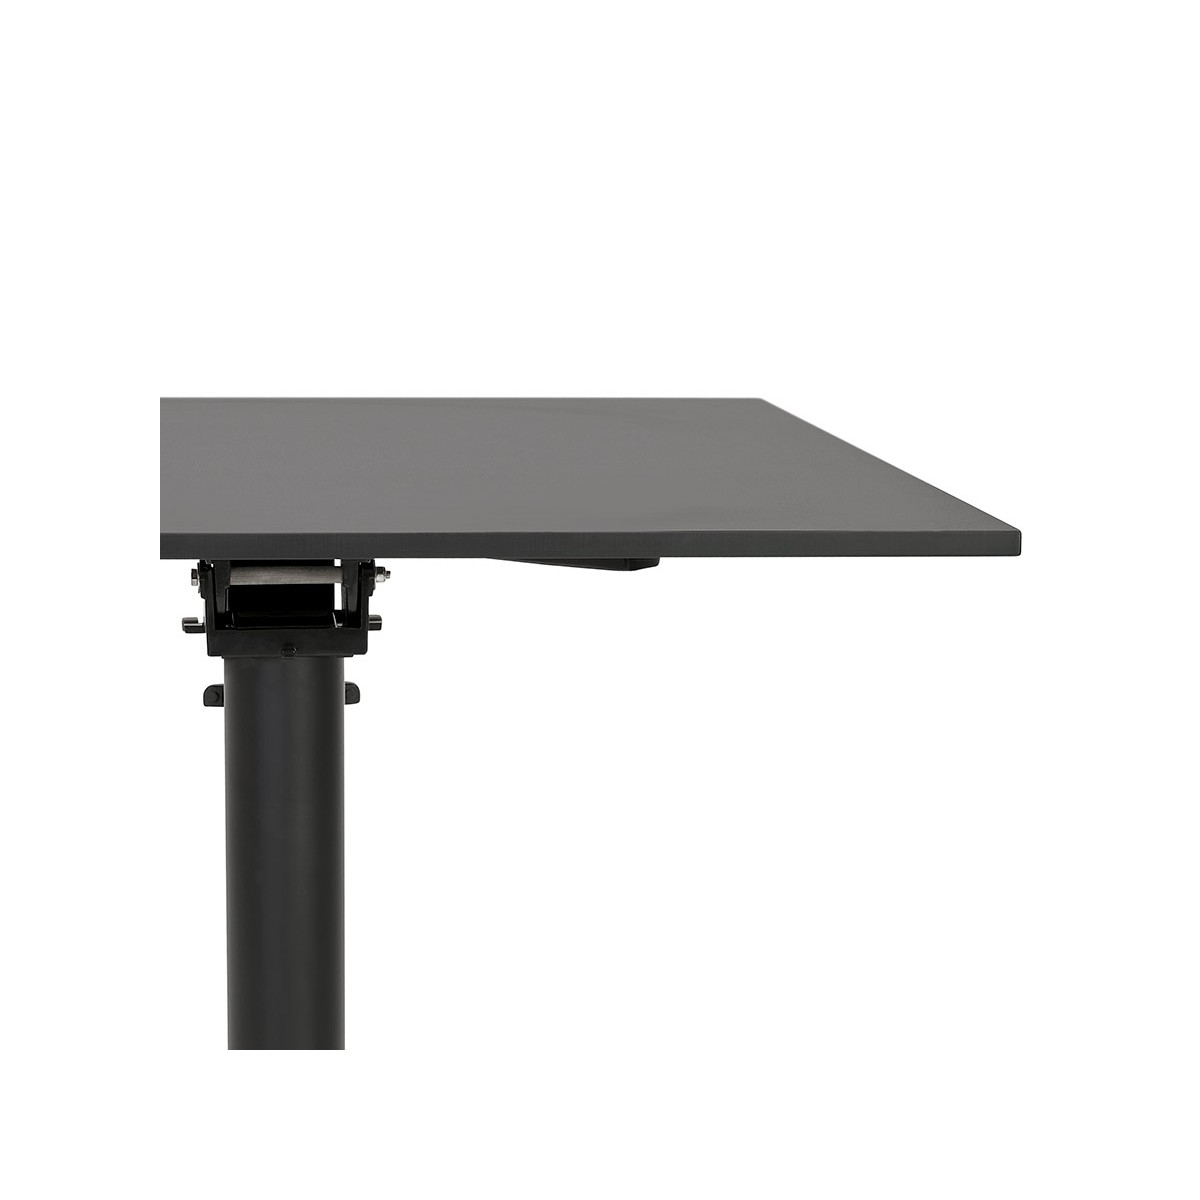 Table haute pliable 'PAXTON' ronde noire - Ø 68 cm